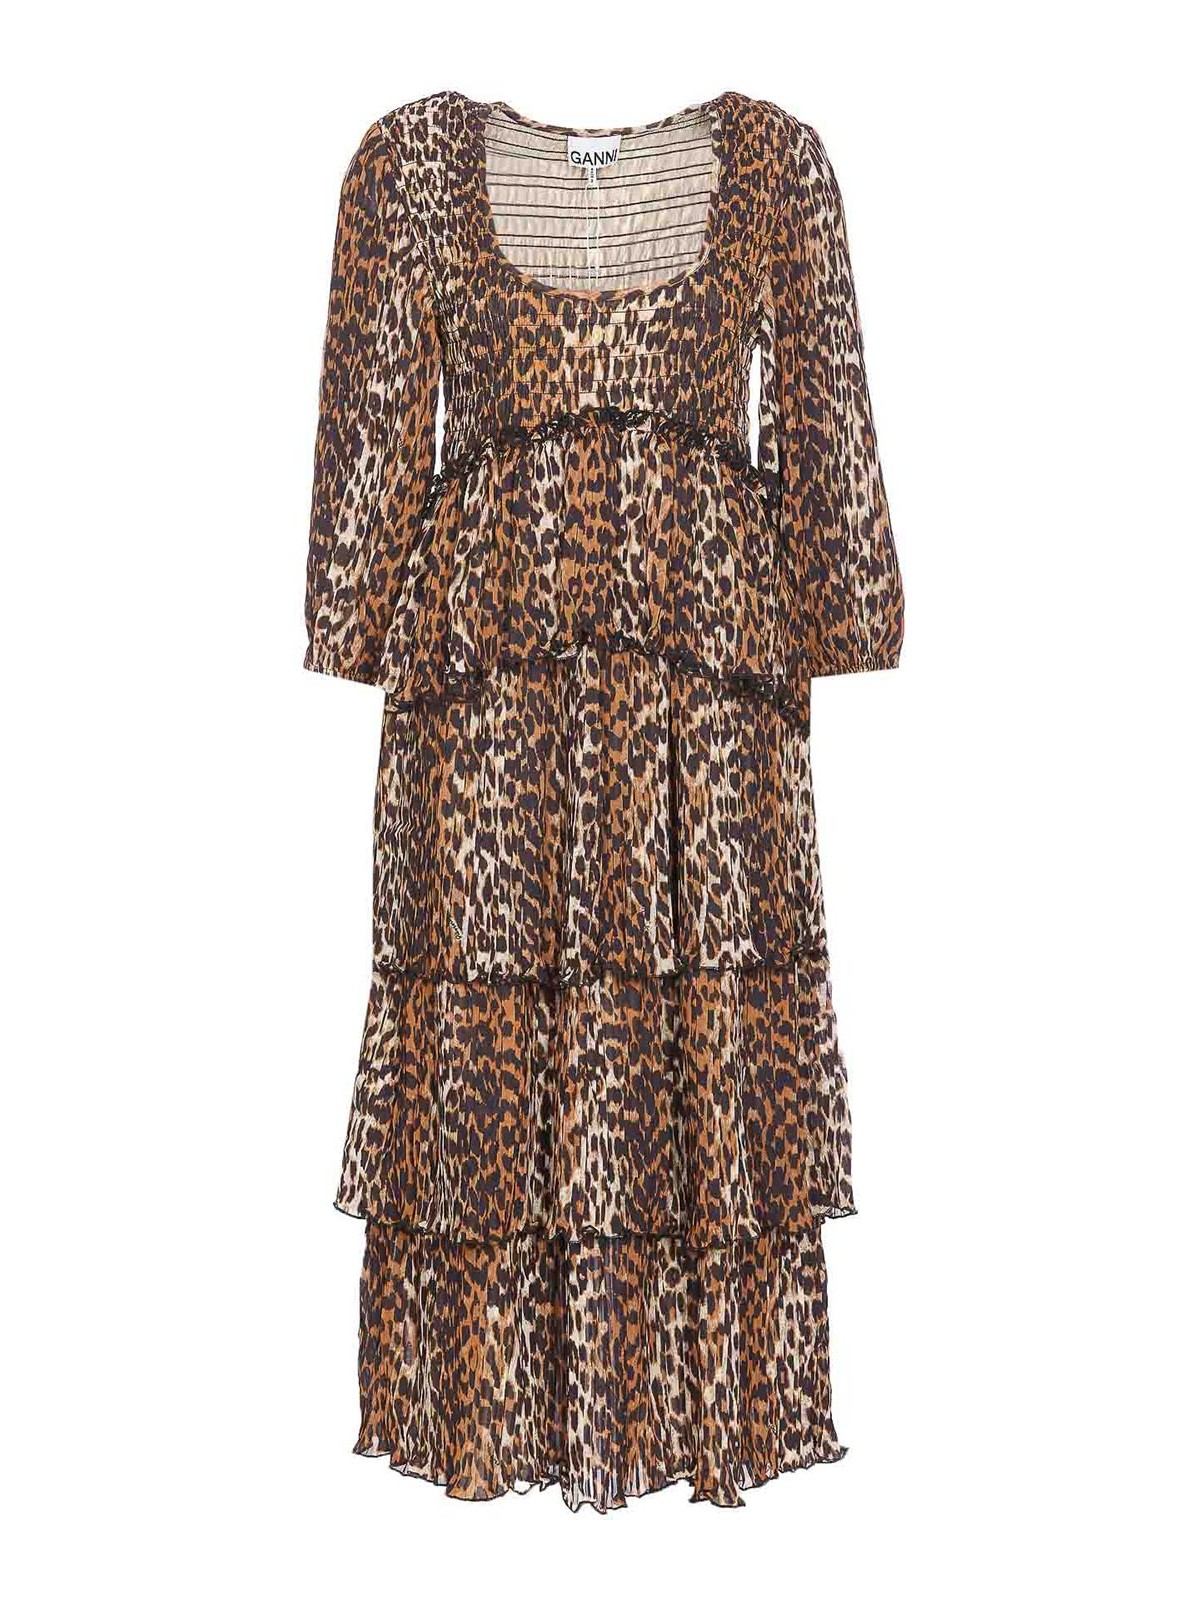 Ganni Leopard Print Midi Dress In Animal Print